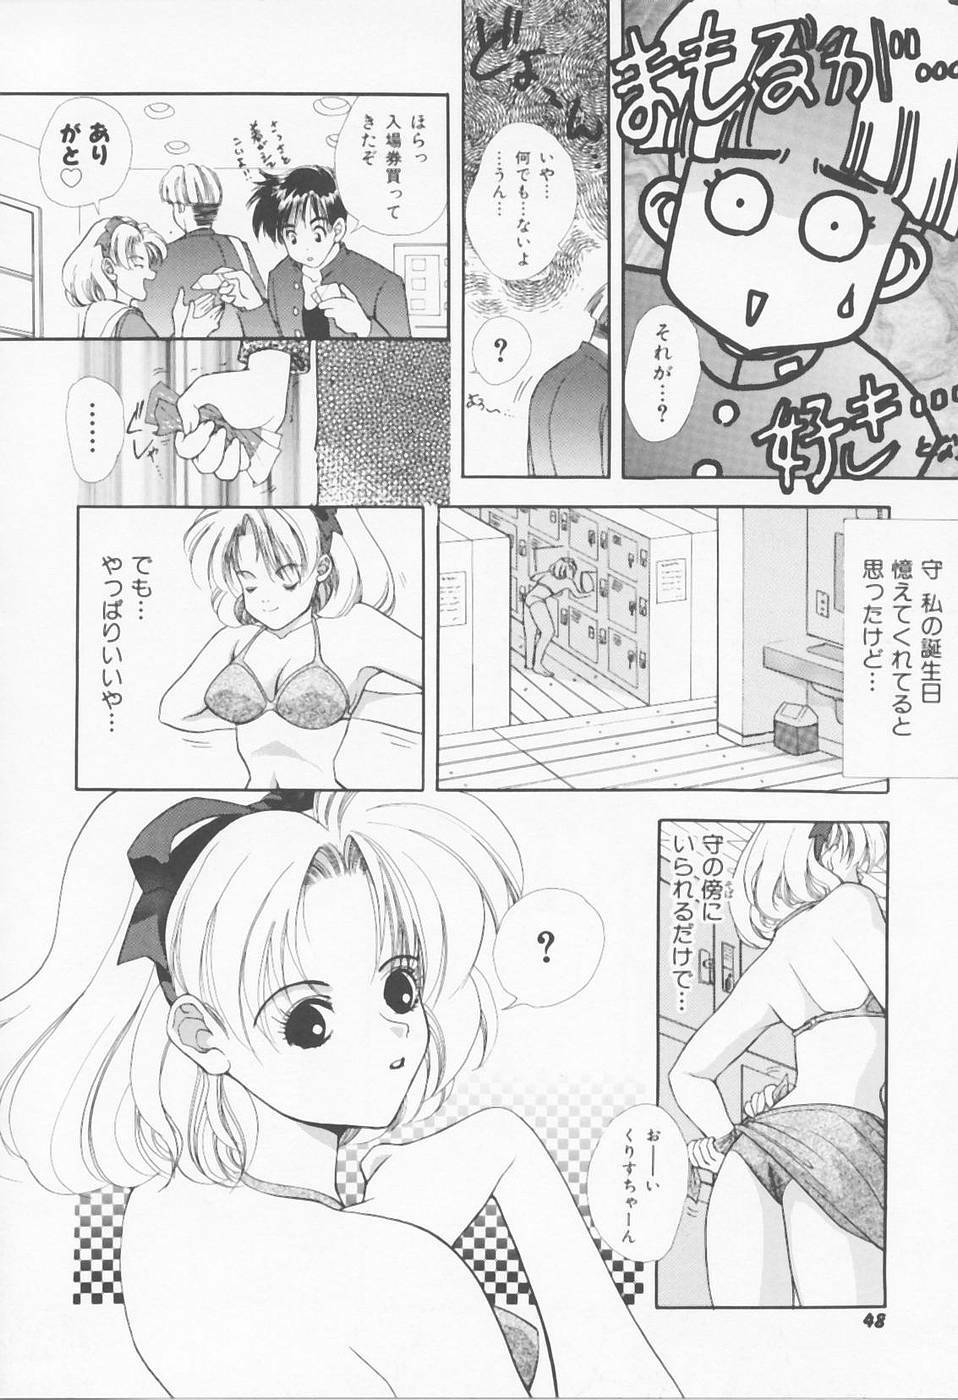 [Sensouji Kinoto] Call page 50 full